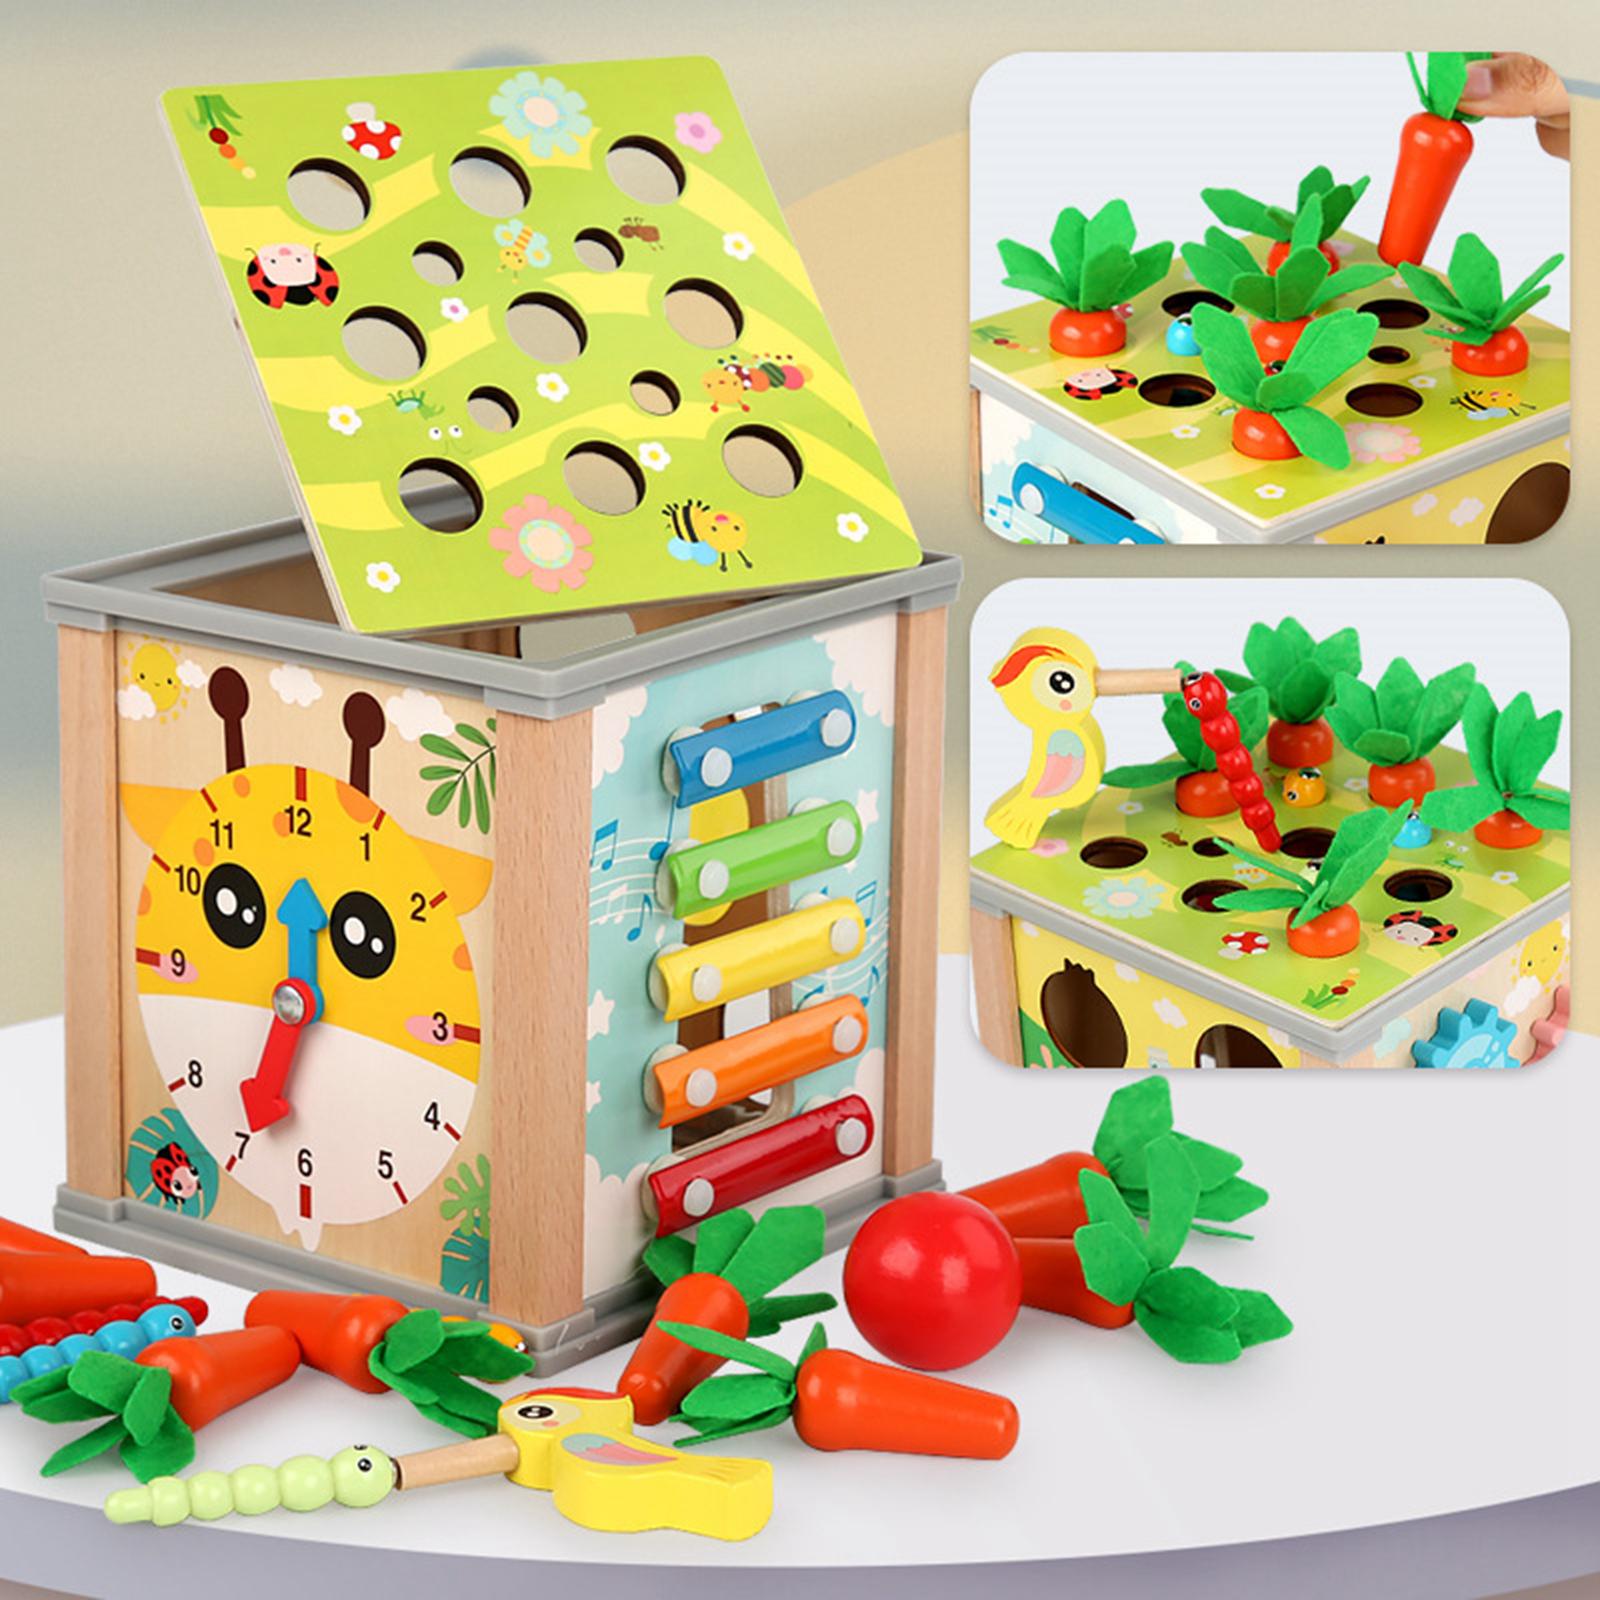 Gamchiano Hình Dạng Phân Loại Cube đồ chơi trẻ em Bằng Gỗ Hoạt Động đồ